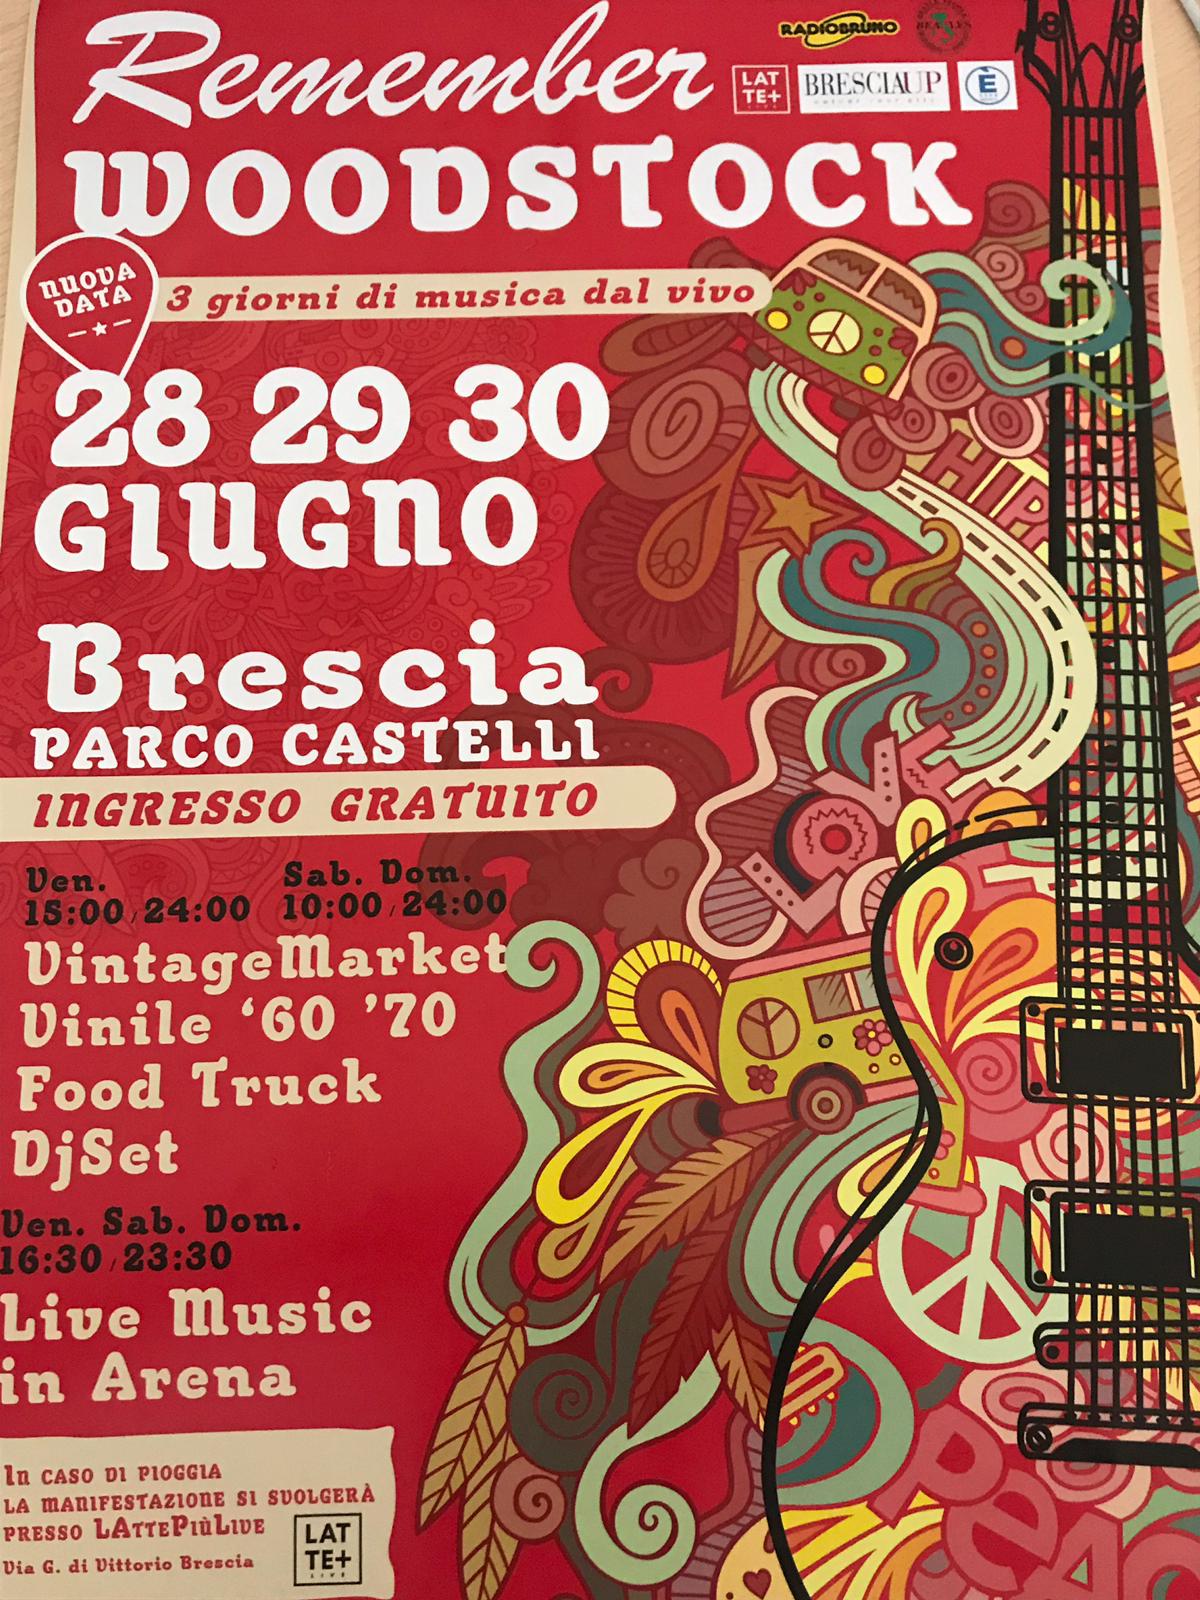 Remember Woodstock, dal 28 al 30 giugno al Parco Castelli